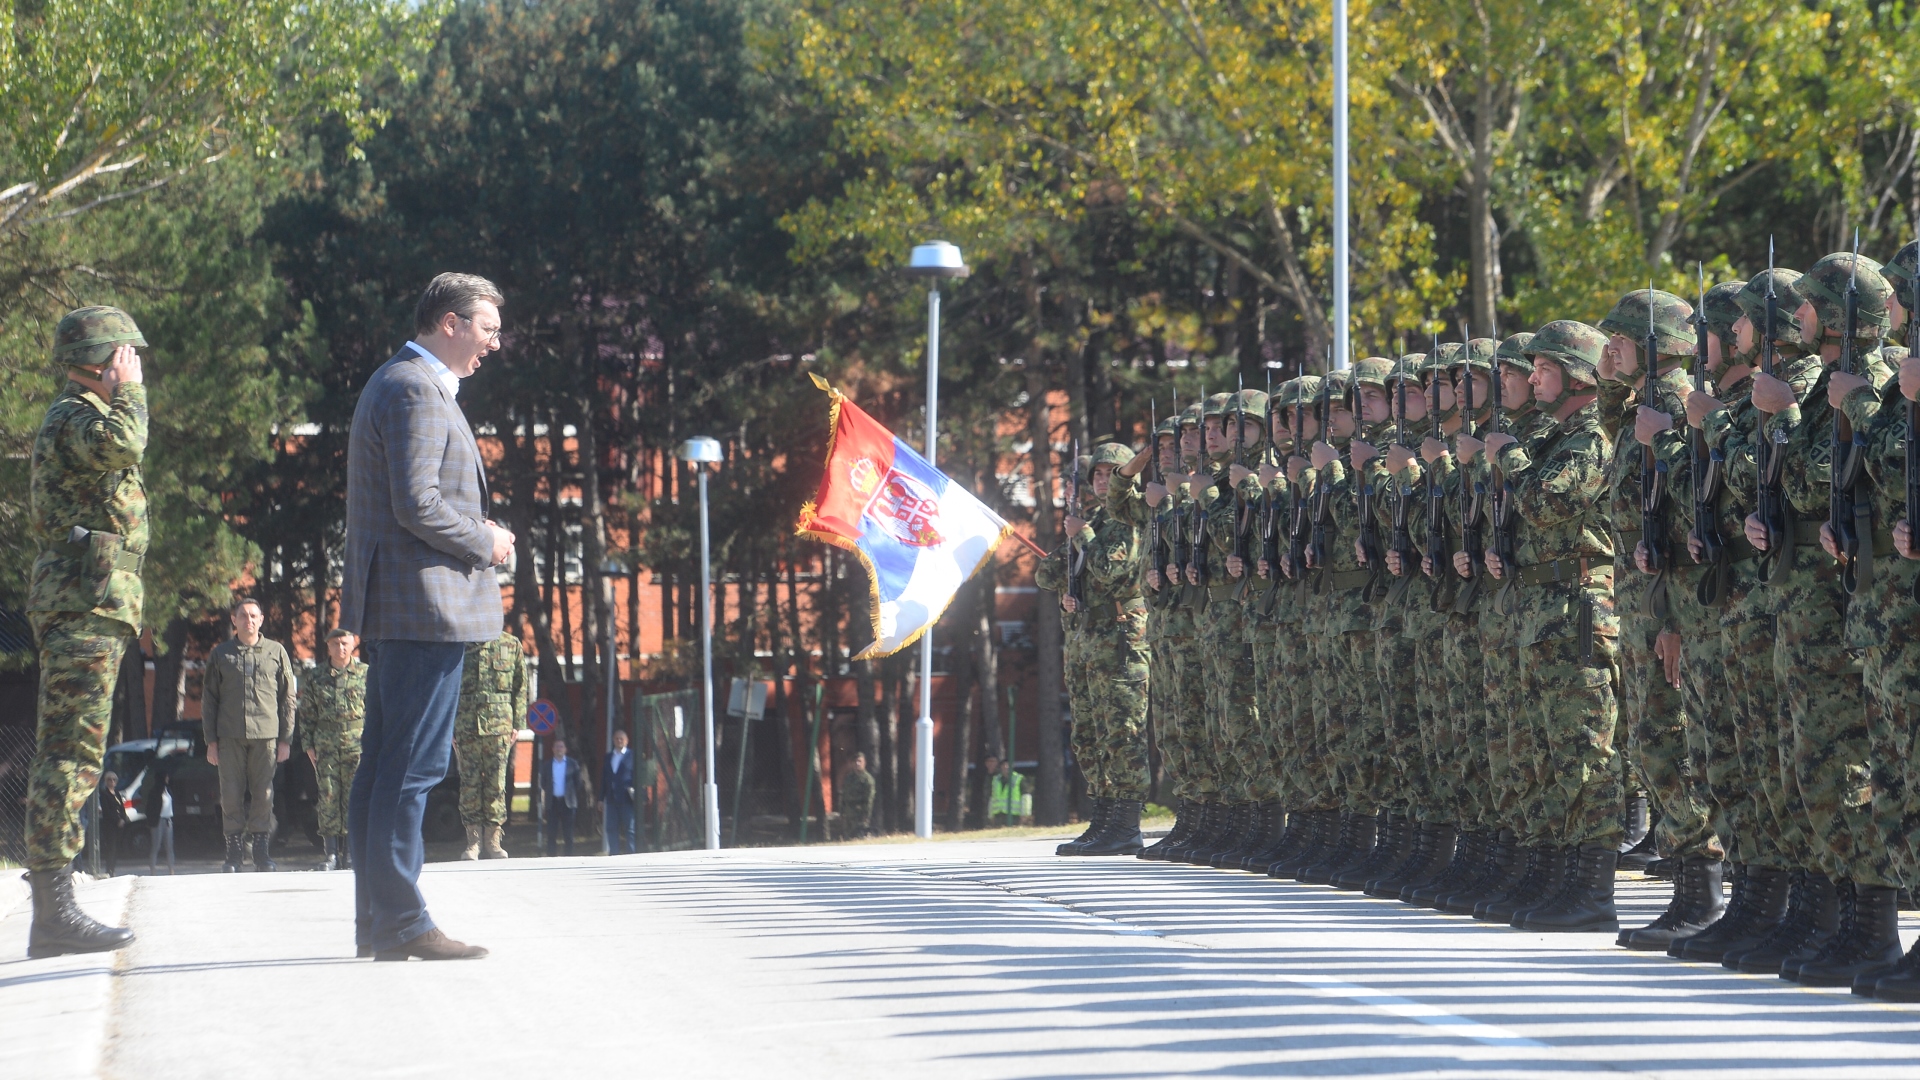 Predsednik Srbije ALeksandar Vucic u Kursumliji koliko je Srbija snaznija toliko je i vojska jaca